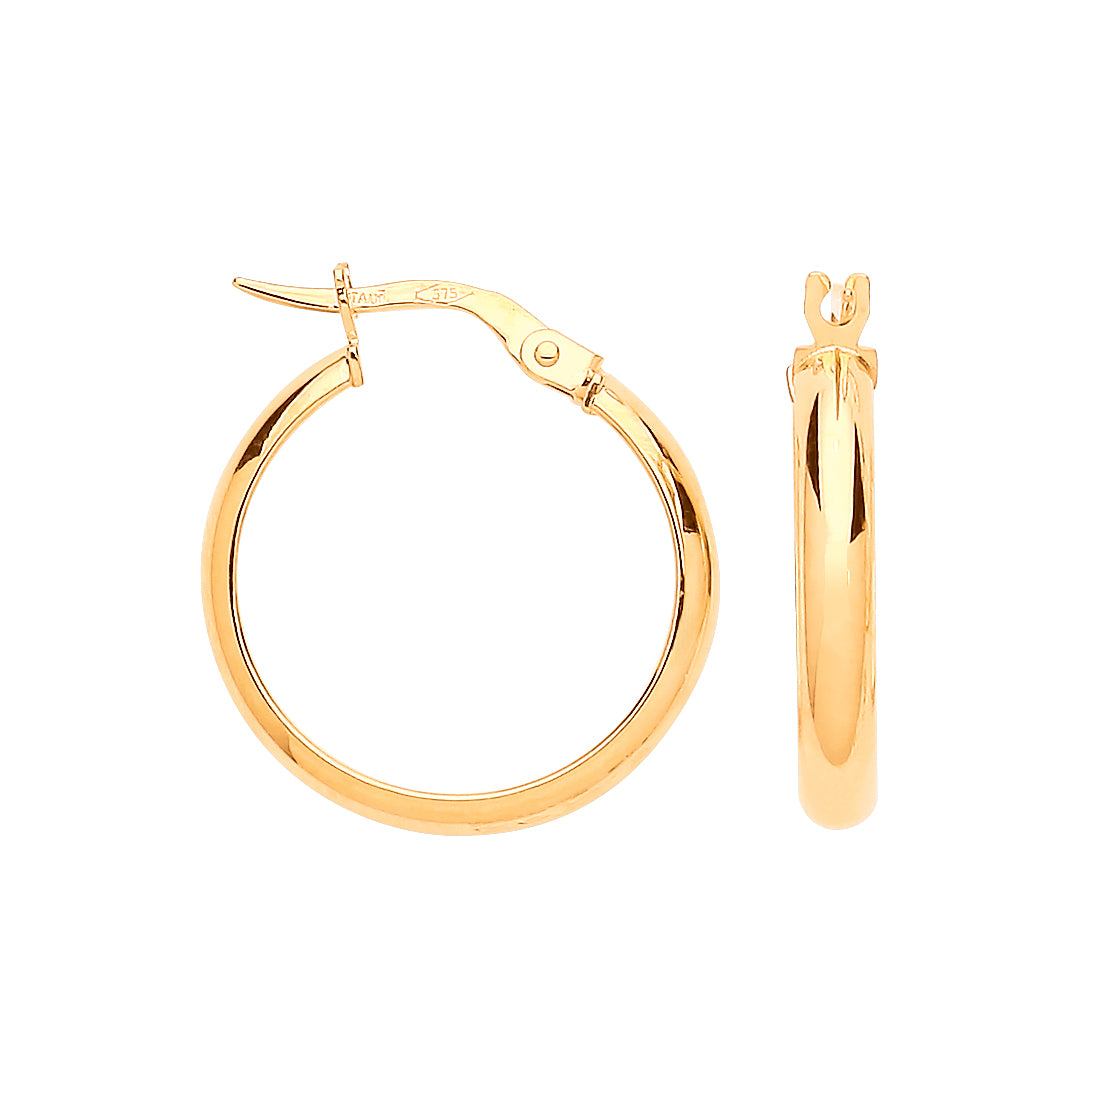 Gold 20mm Hoop Earrings